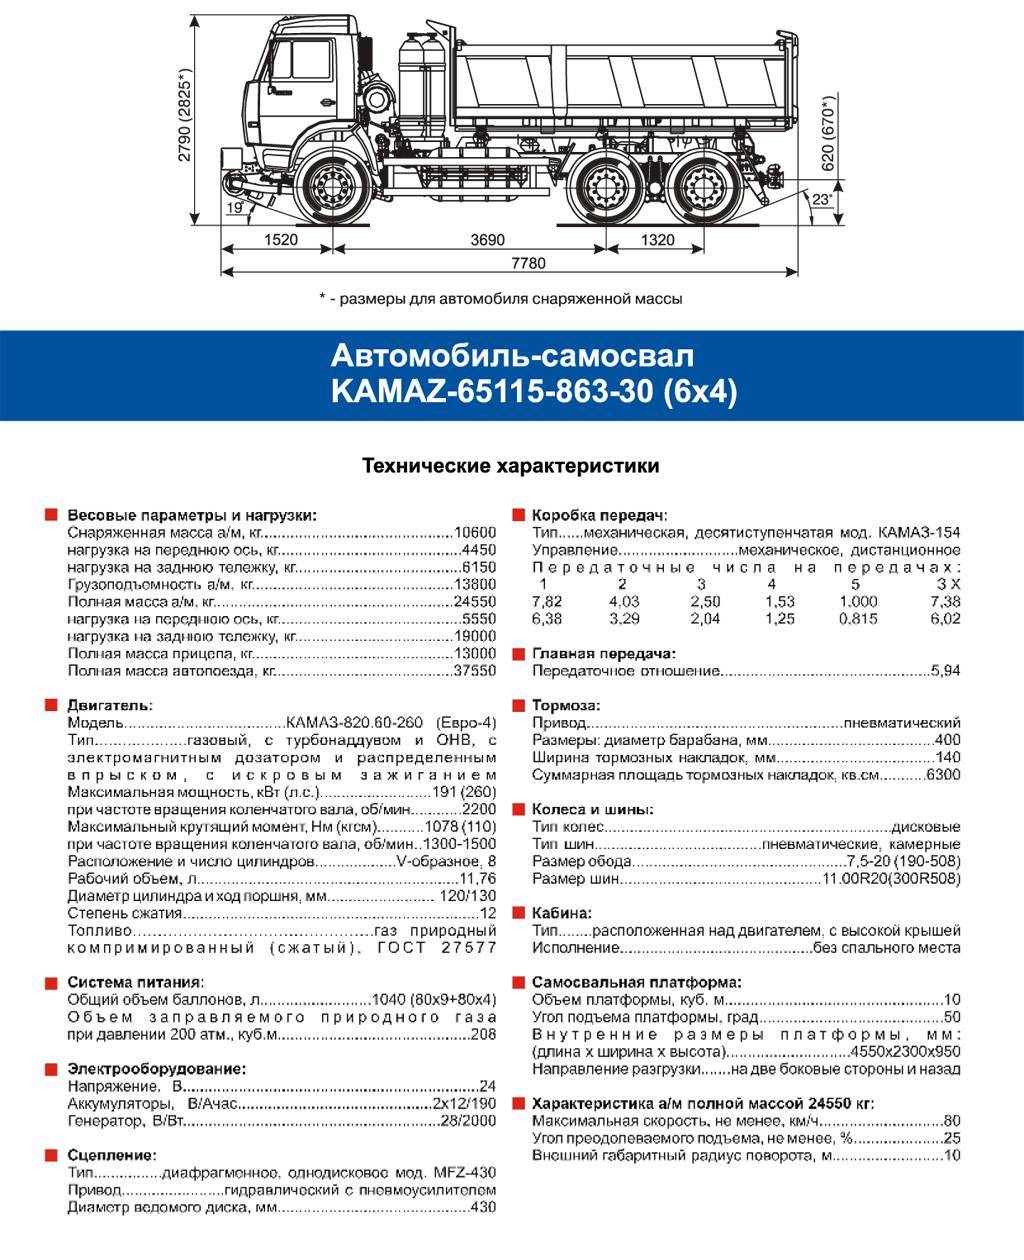 ✅ камаз-6520 самосвал мамонт: как выглядит автосамосвал, грузоподъемность и объем кузова, технические характеристики - tractoramtz.ru